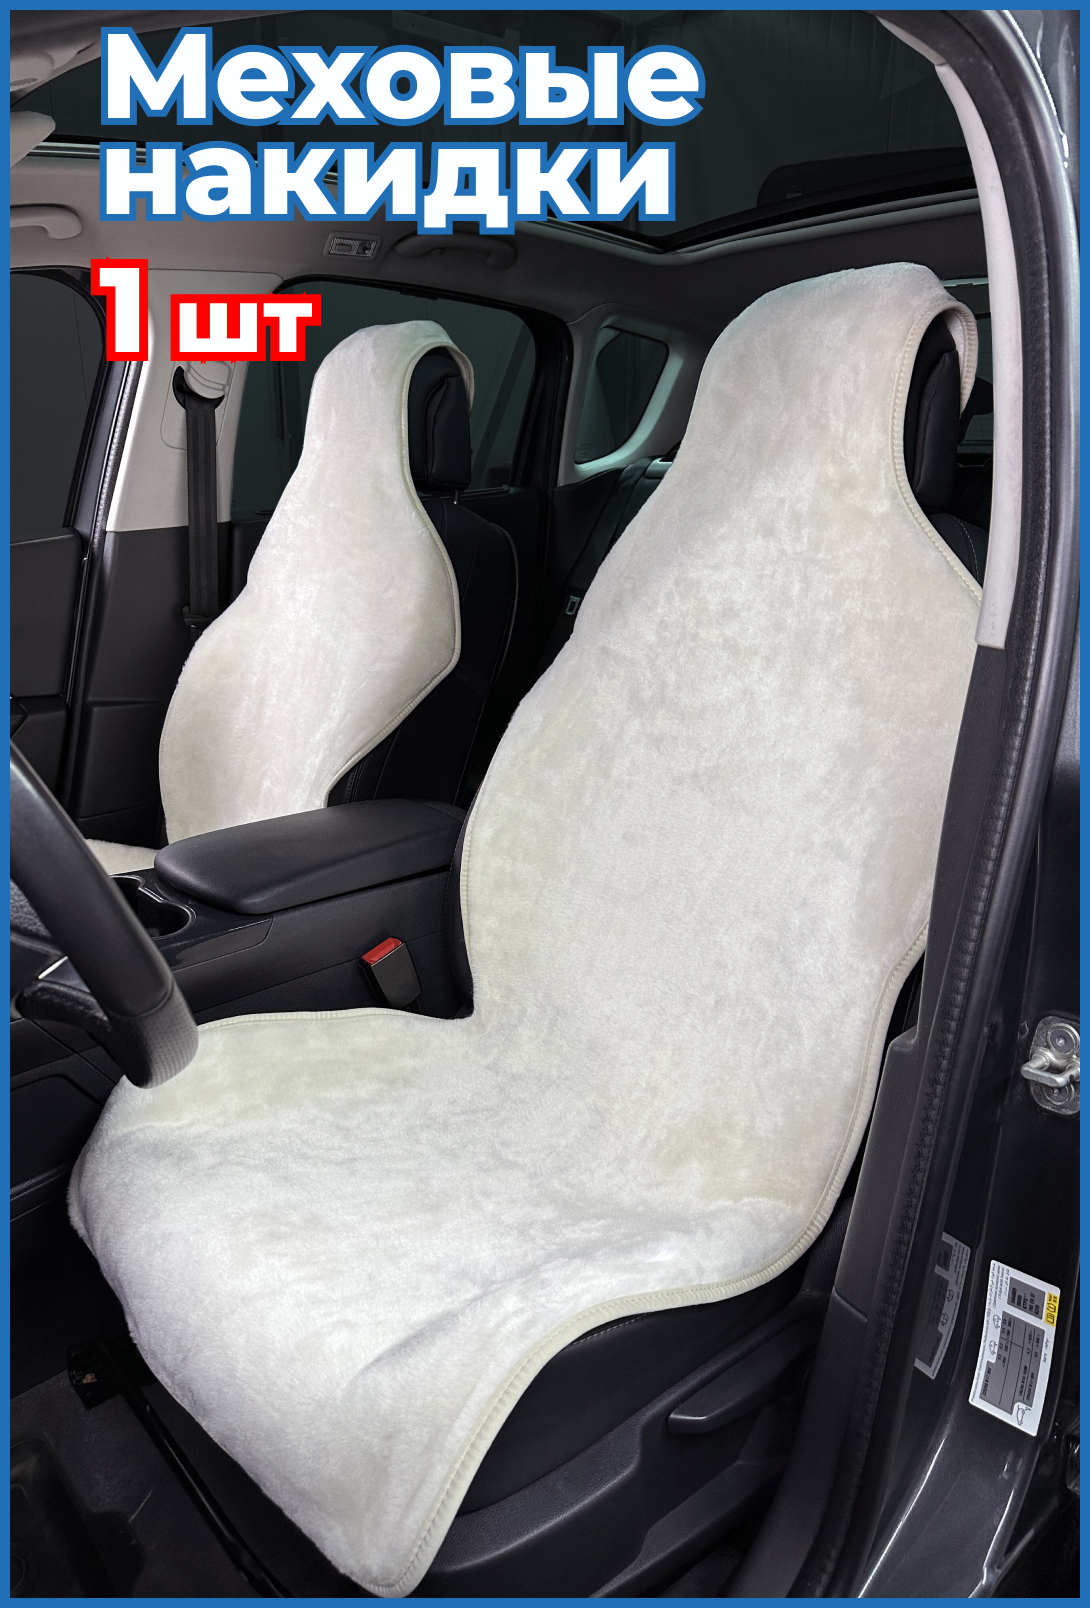 Накидки на сиденья автомобиля Мосавтотюнинг Мех ЛАЙТ 1 штука MT2968-62